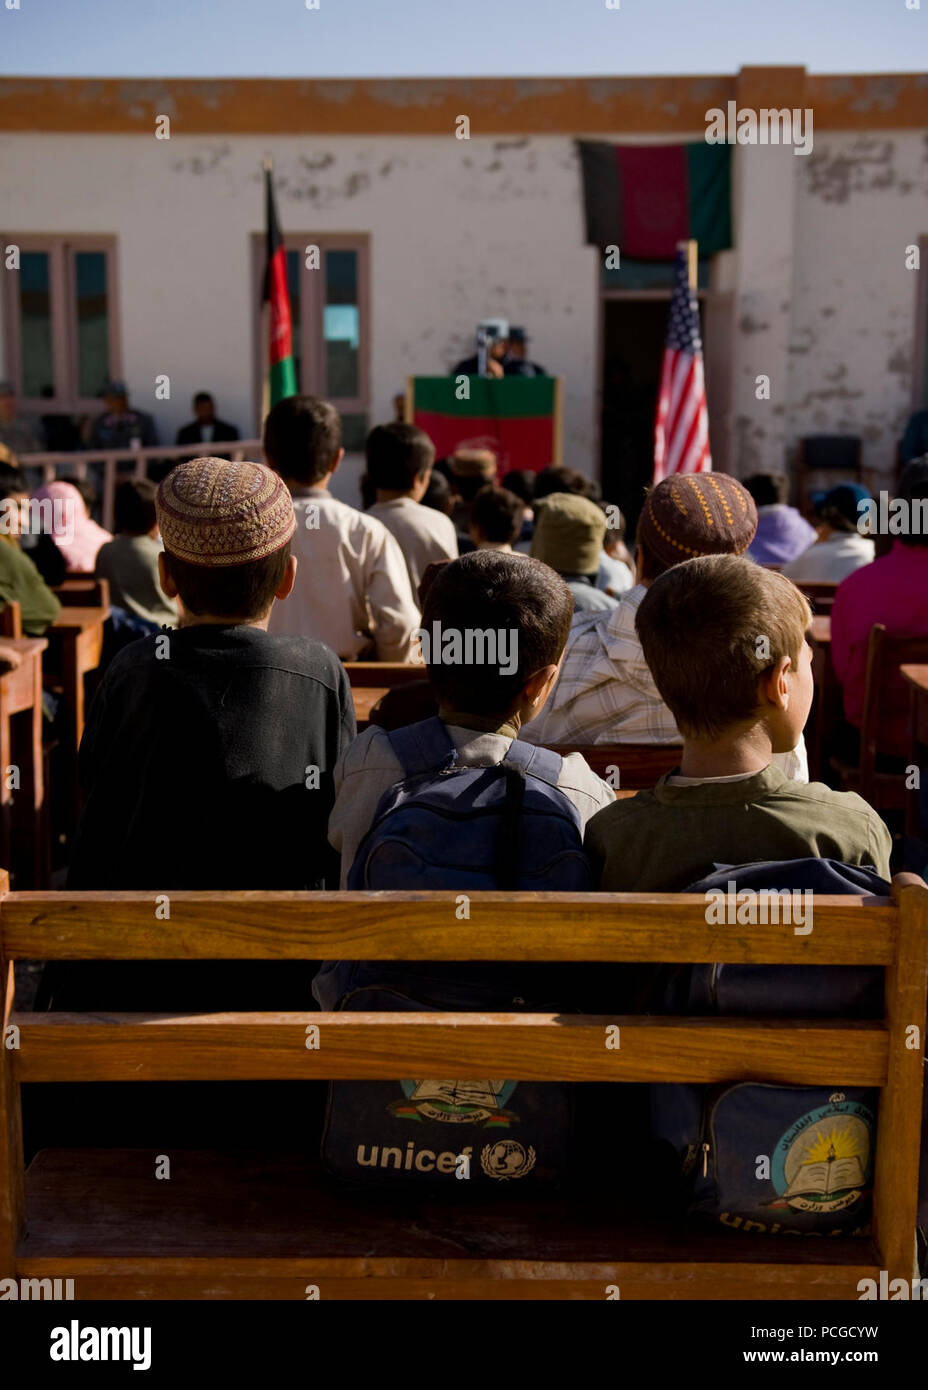 An einer Grundschule in der Nähe von Kandahar Air Field, Kinder sitzen bei einem Besuch von der örtlichen Polizei und koalitionsspitzen. Beide sprach mit den Kindern über die Bedeutung der Bildung und gutes Verhalten vor der Übergabe der Schule liefert. Stockfoto